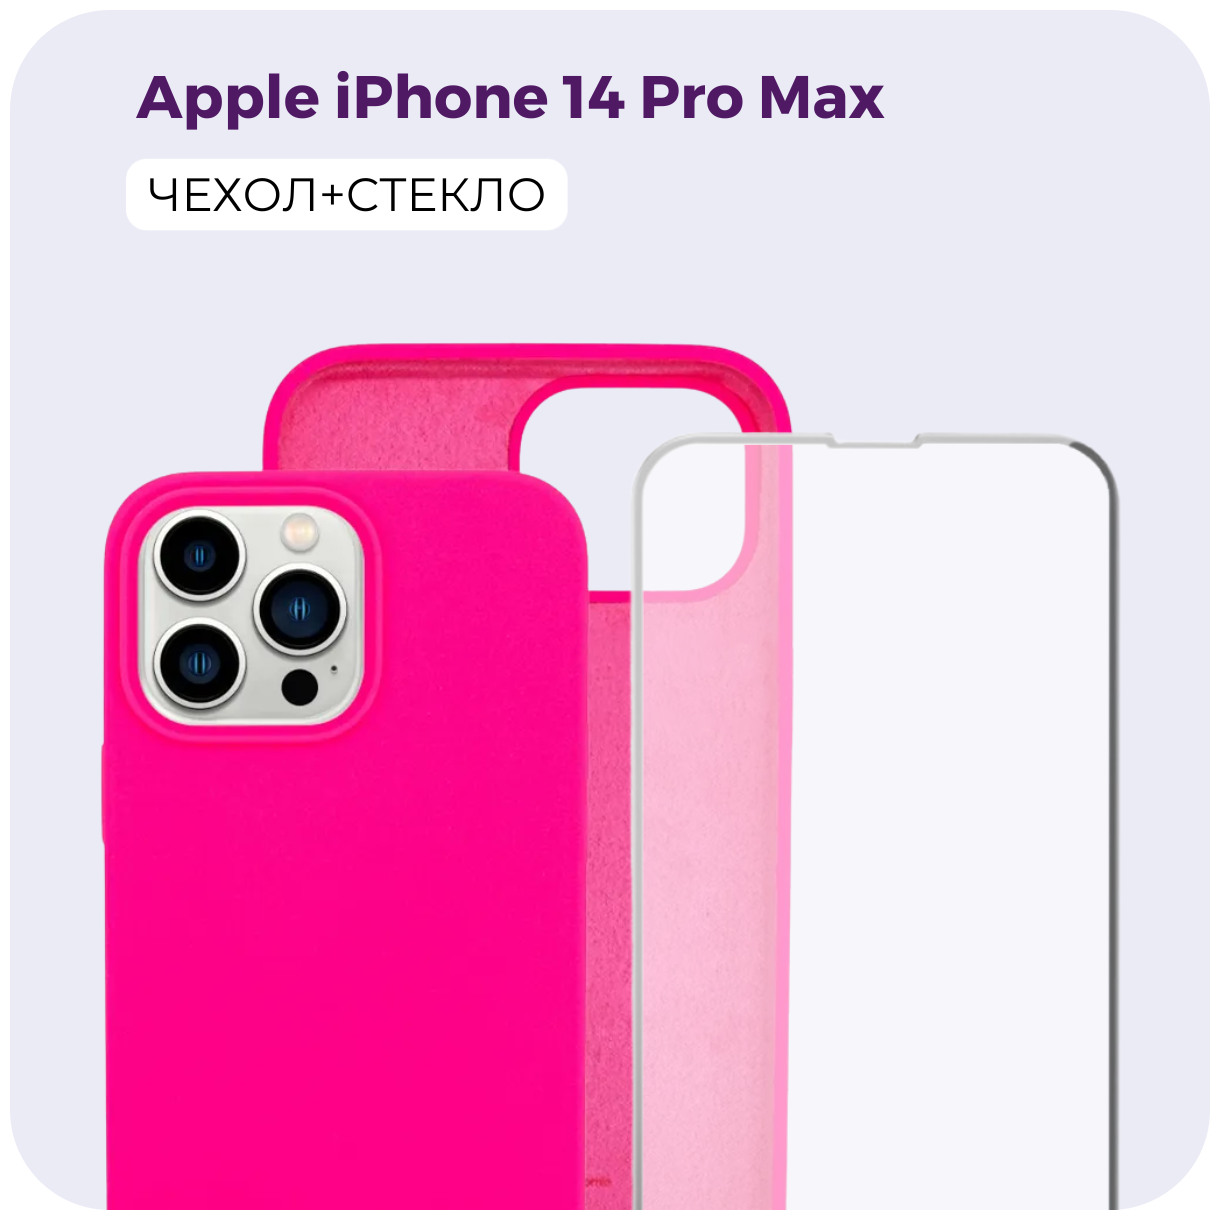 Комплект 2 в 1: Защитный матовый чехол (бампер) Silicone Case + защитное стекло для Apple iPhone 14 Pro Max (Эпл Айфон 14 Про Макс). /№43